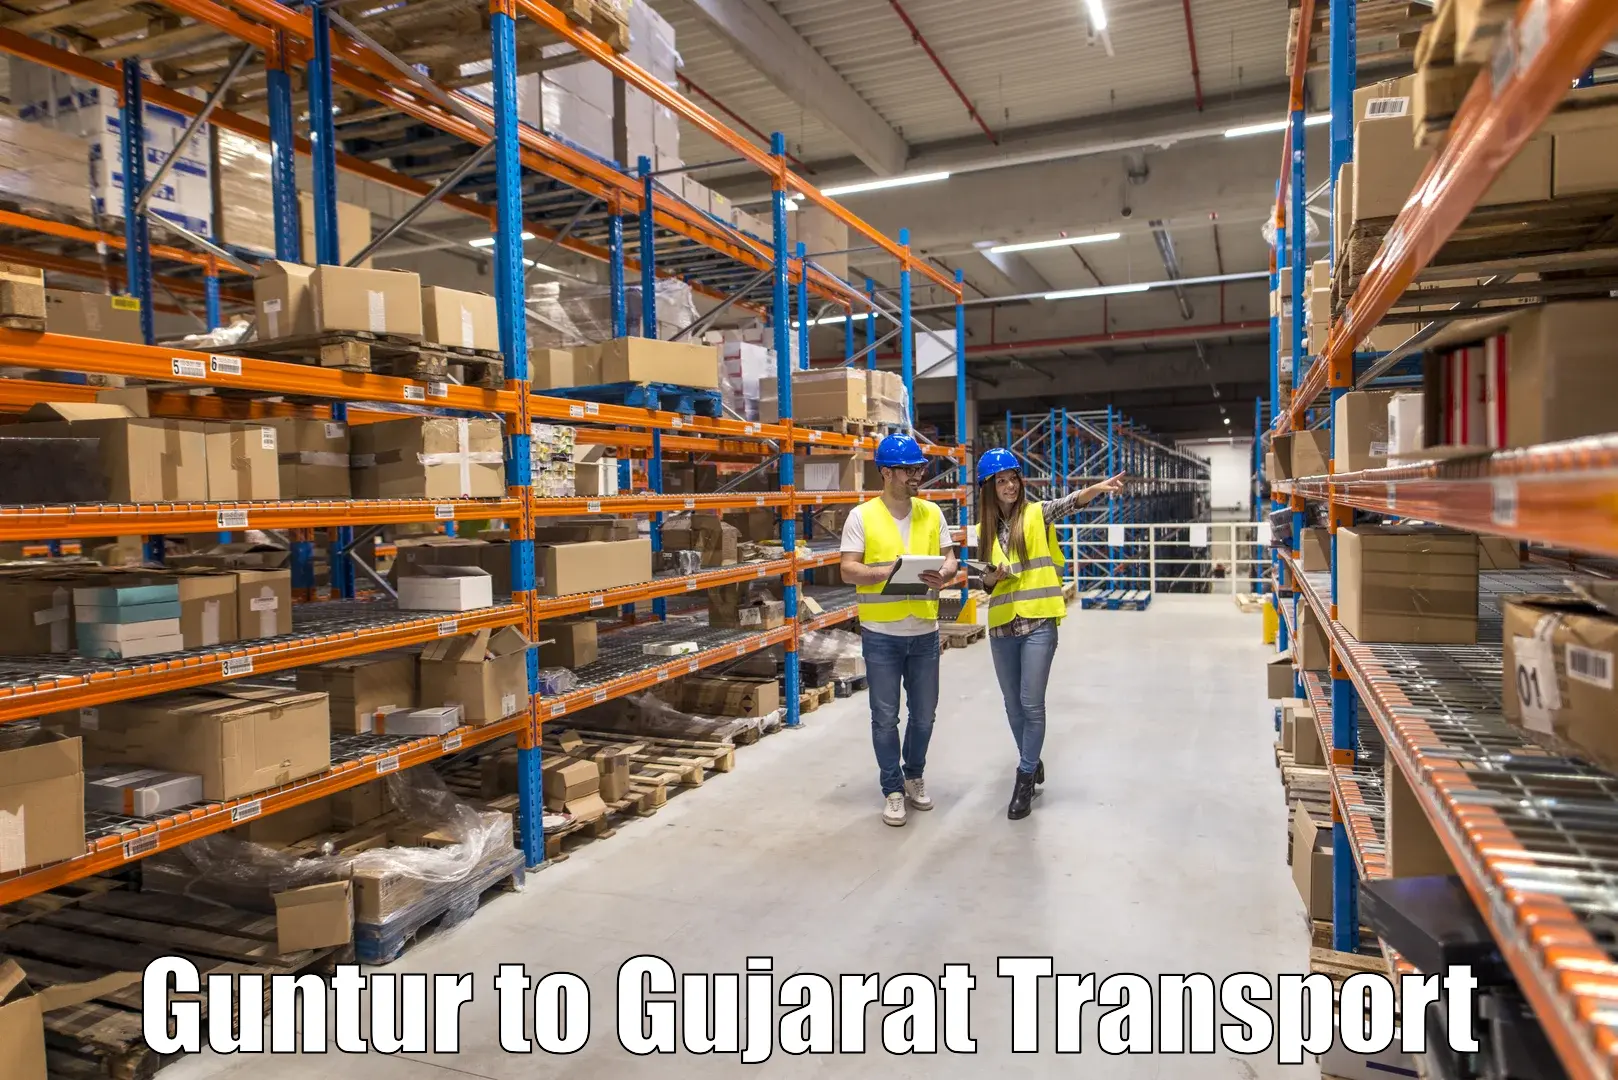 Truck transport companies in India Guntur to Wankaner